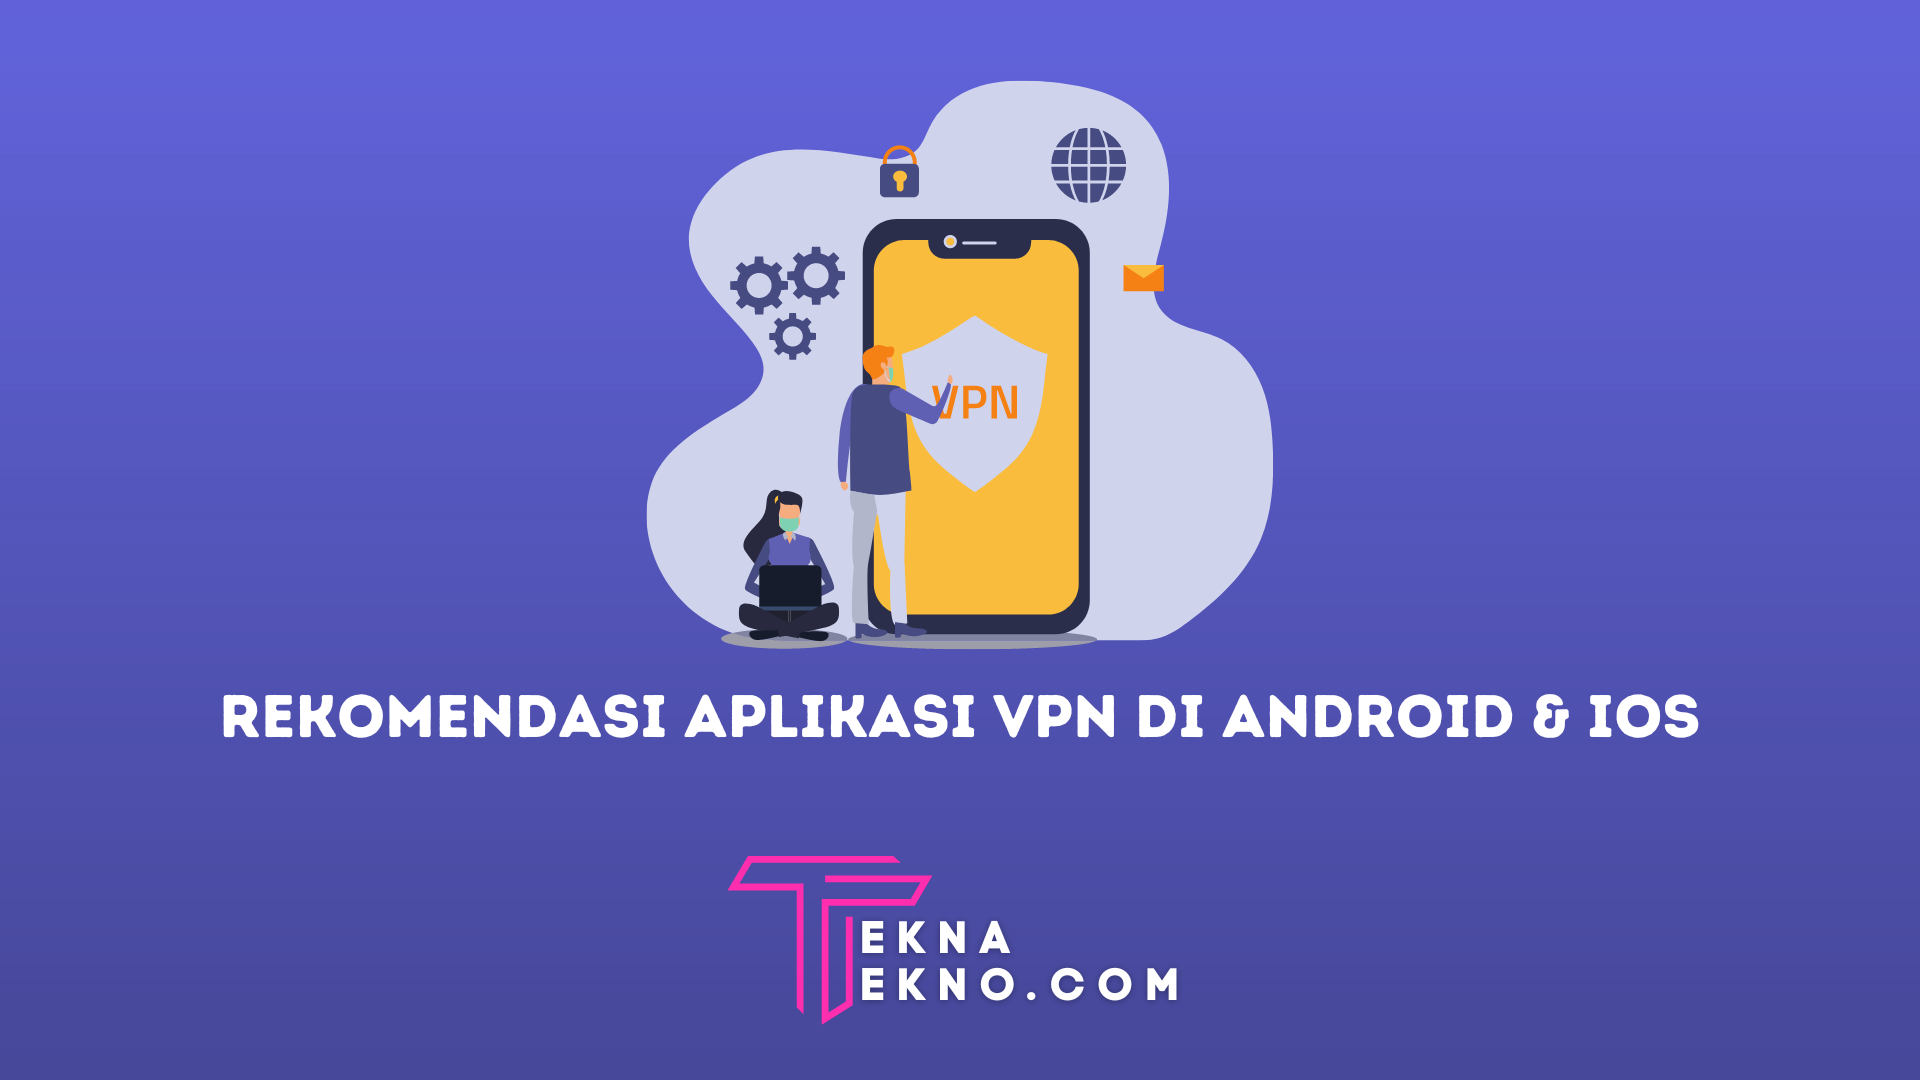 20 Rekomendasi Aplikasi VPN Terbaik, Aman dan Gratis untuk Android dan iOS